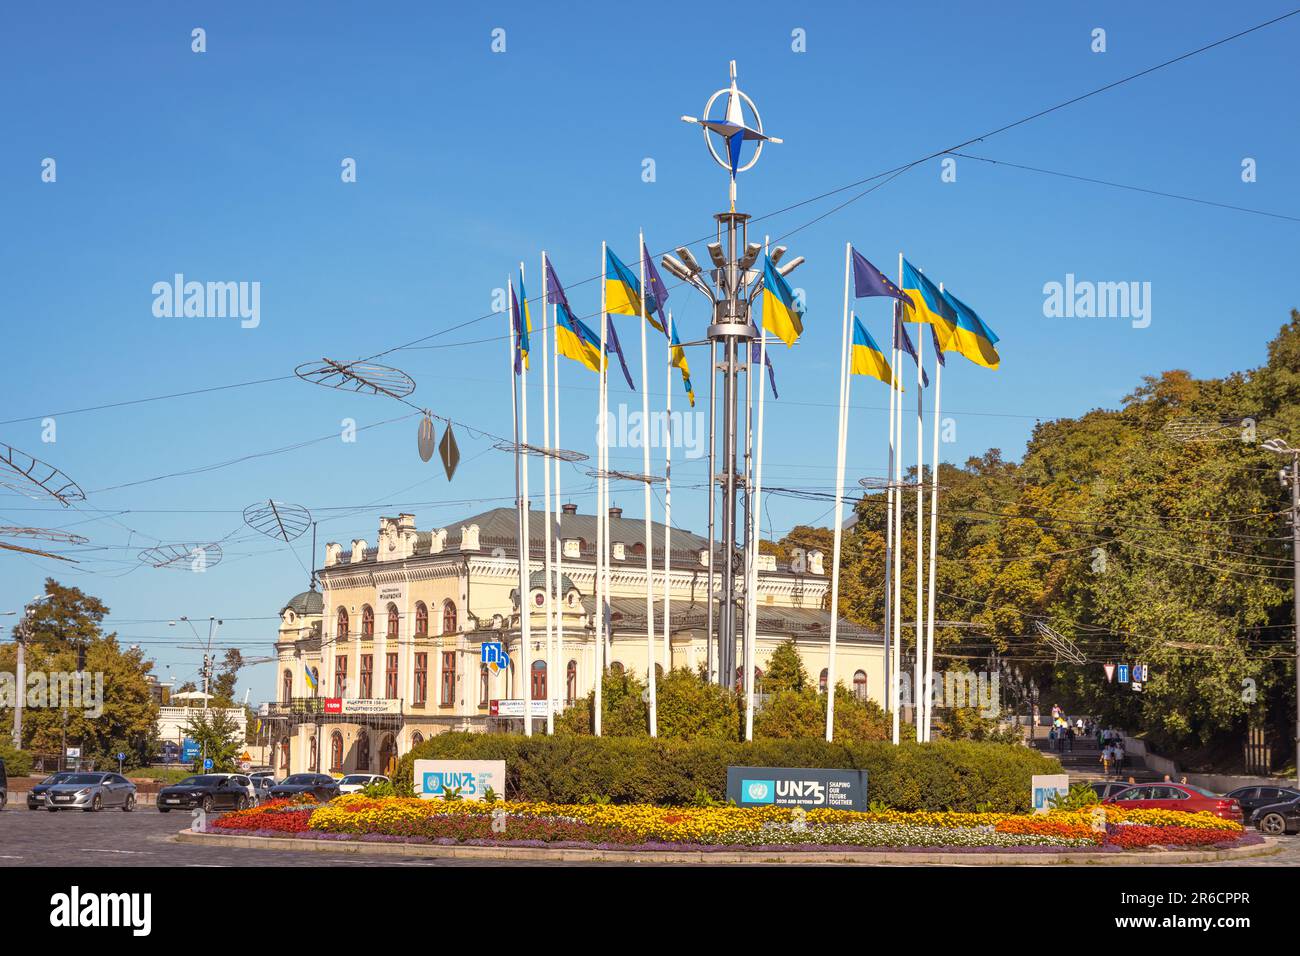 Una rotonda a Kiev che celebra 70 anni di NATO, notevole a causa dello status non NATO dell'Ucraina. Foto Stock